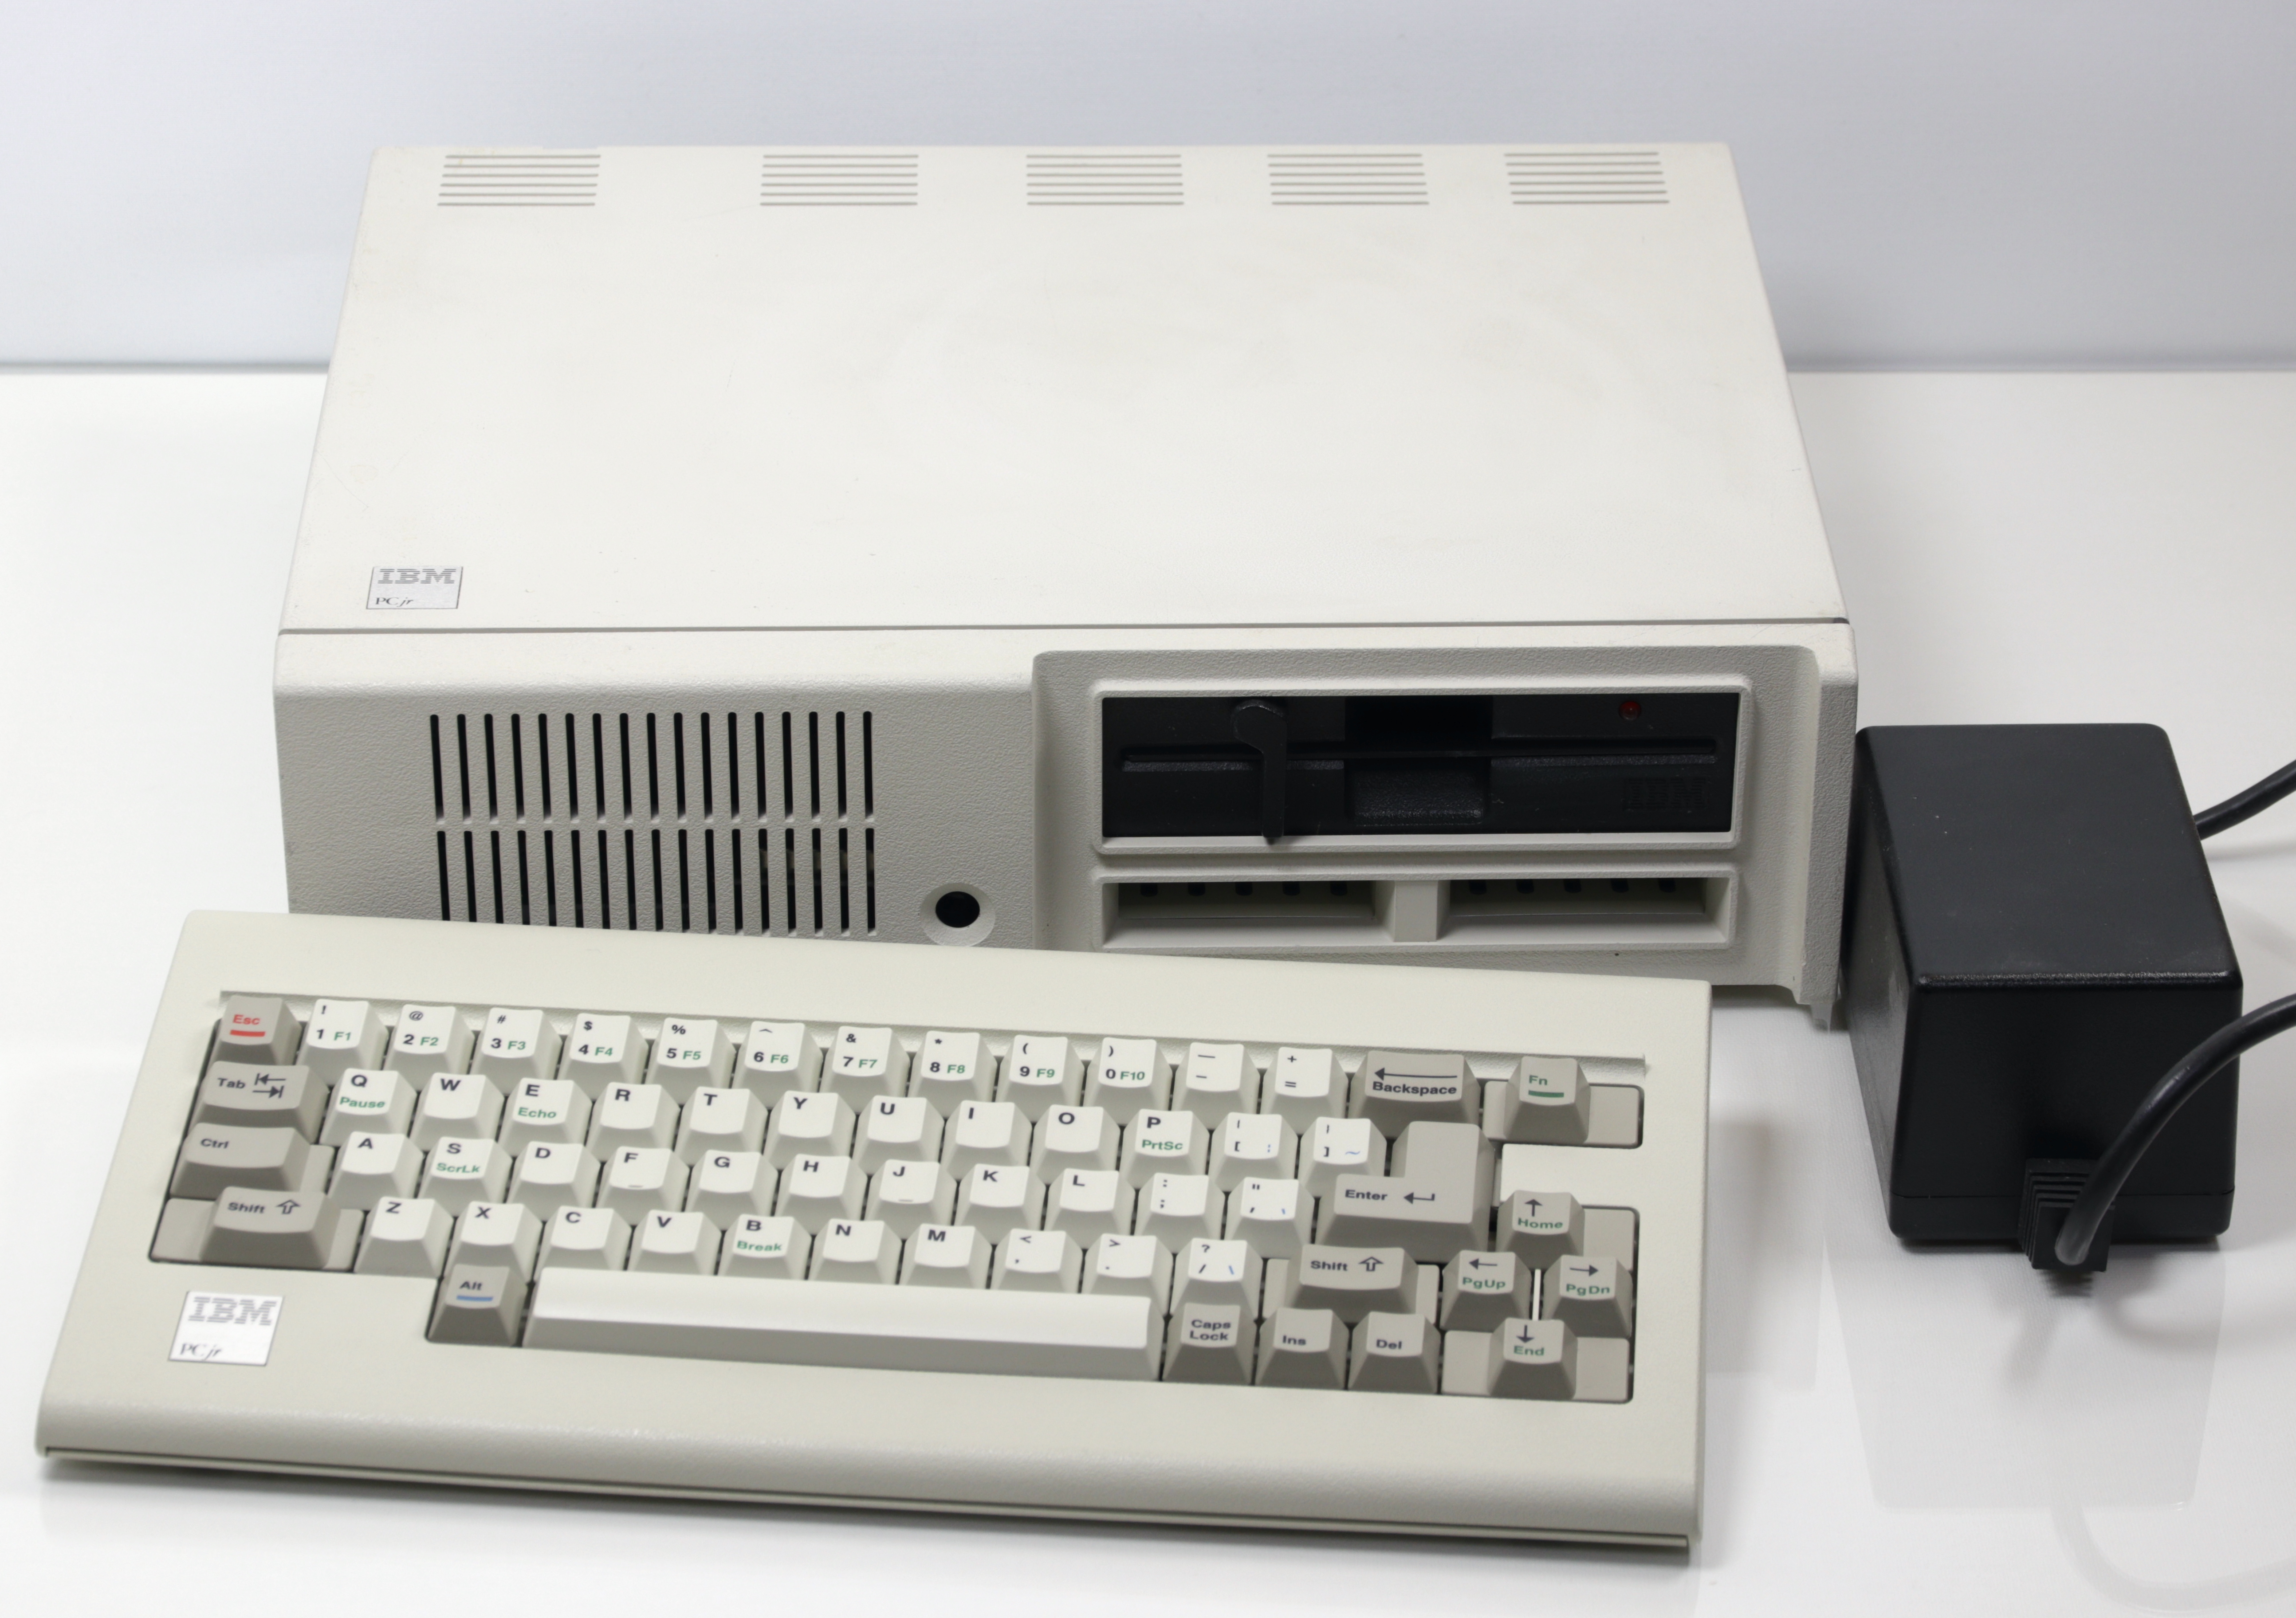 IBM PCjr config